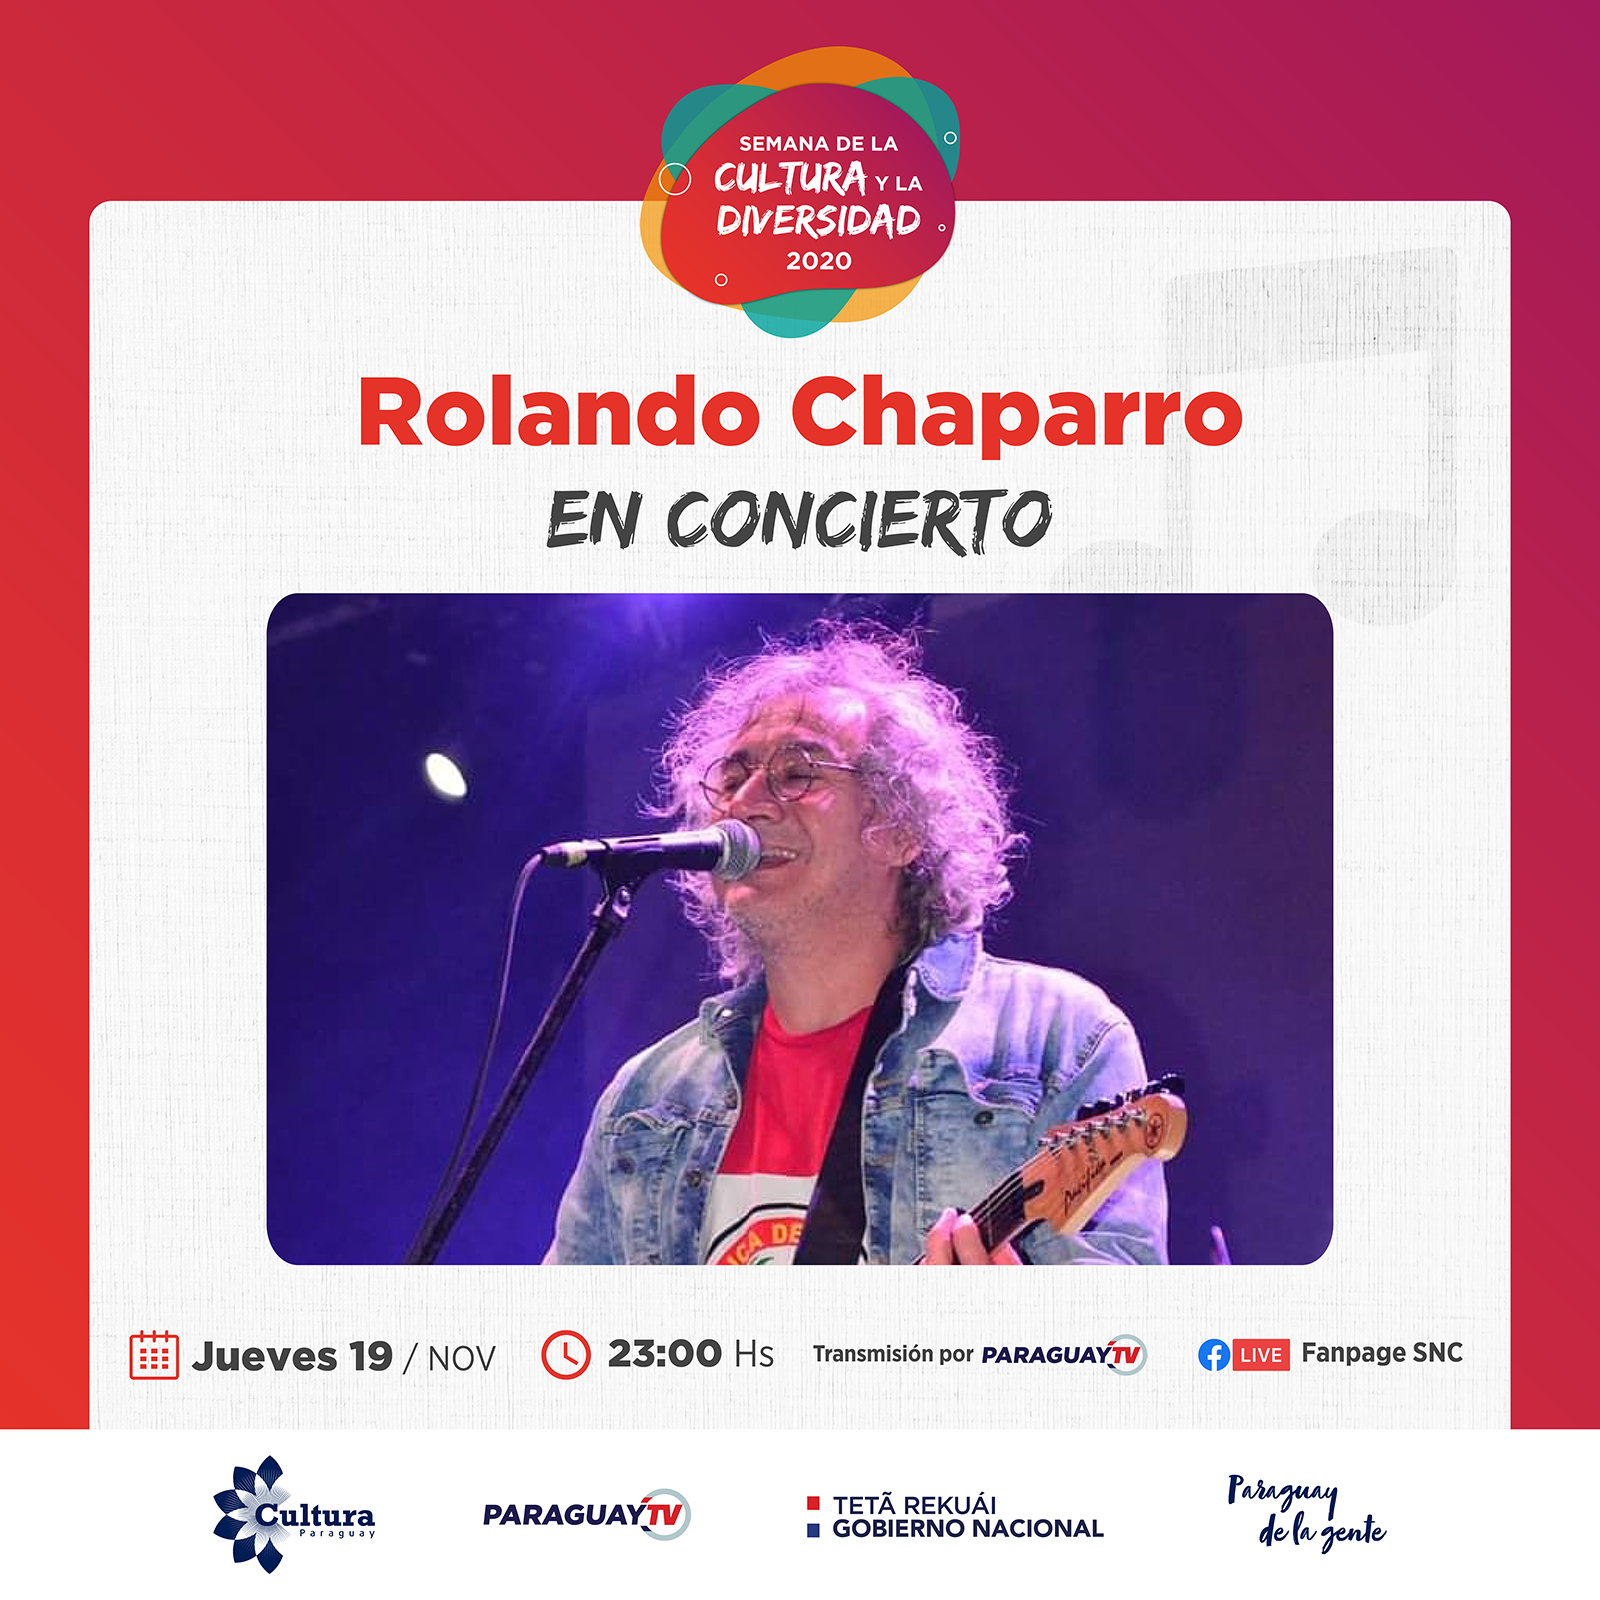 Obras de Teatro, Danza y el show de Rolando Chaparro en jornadas estelares de la Semana de la Cultura y la Diversidad 2020 imagen